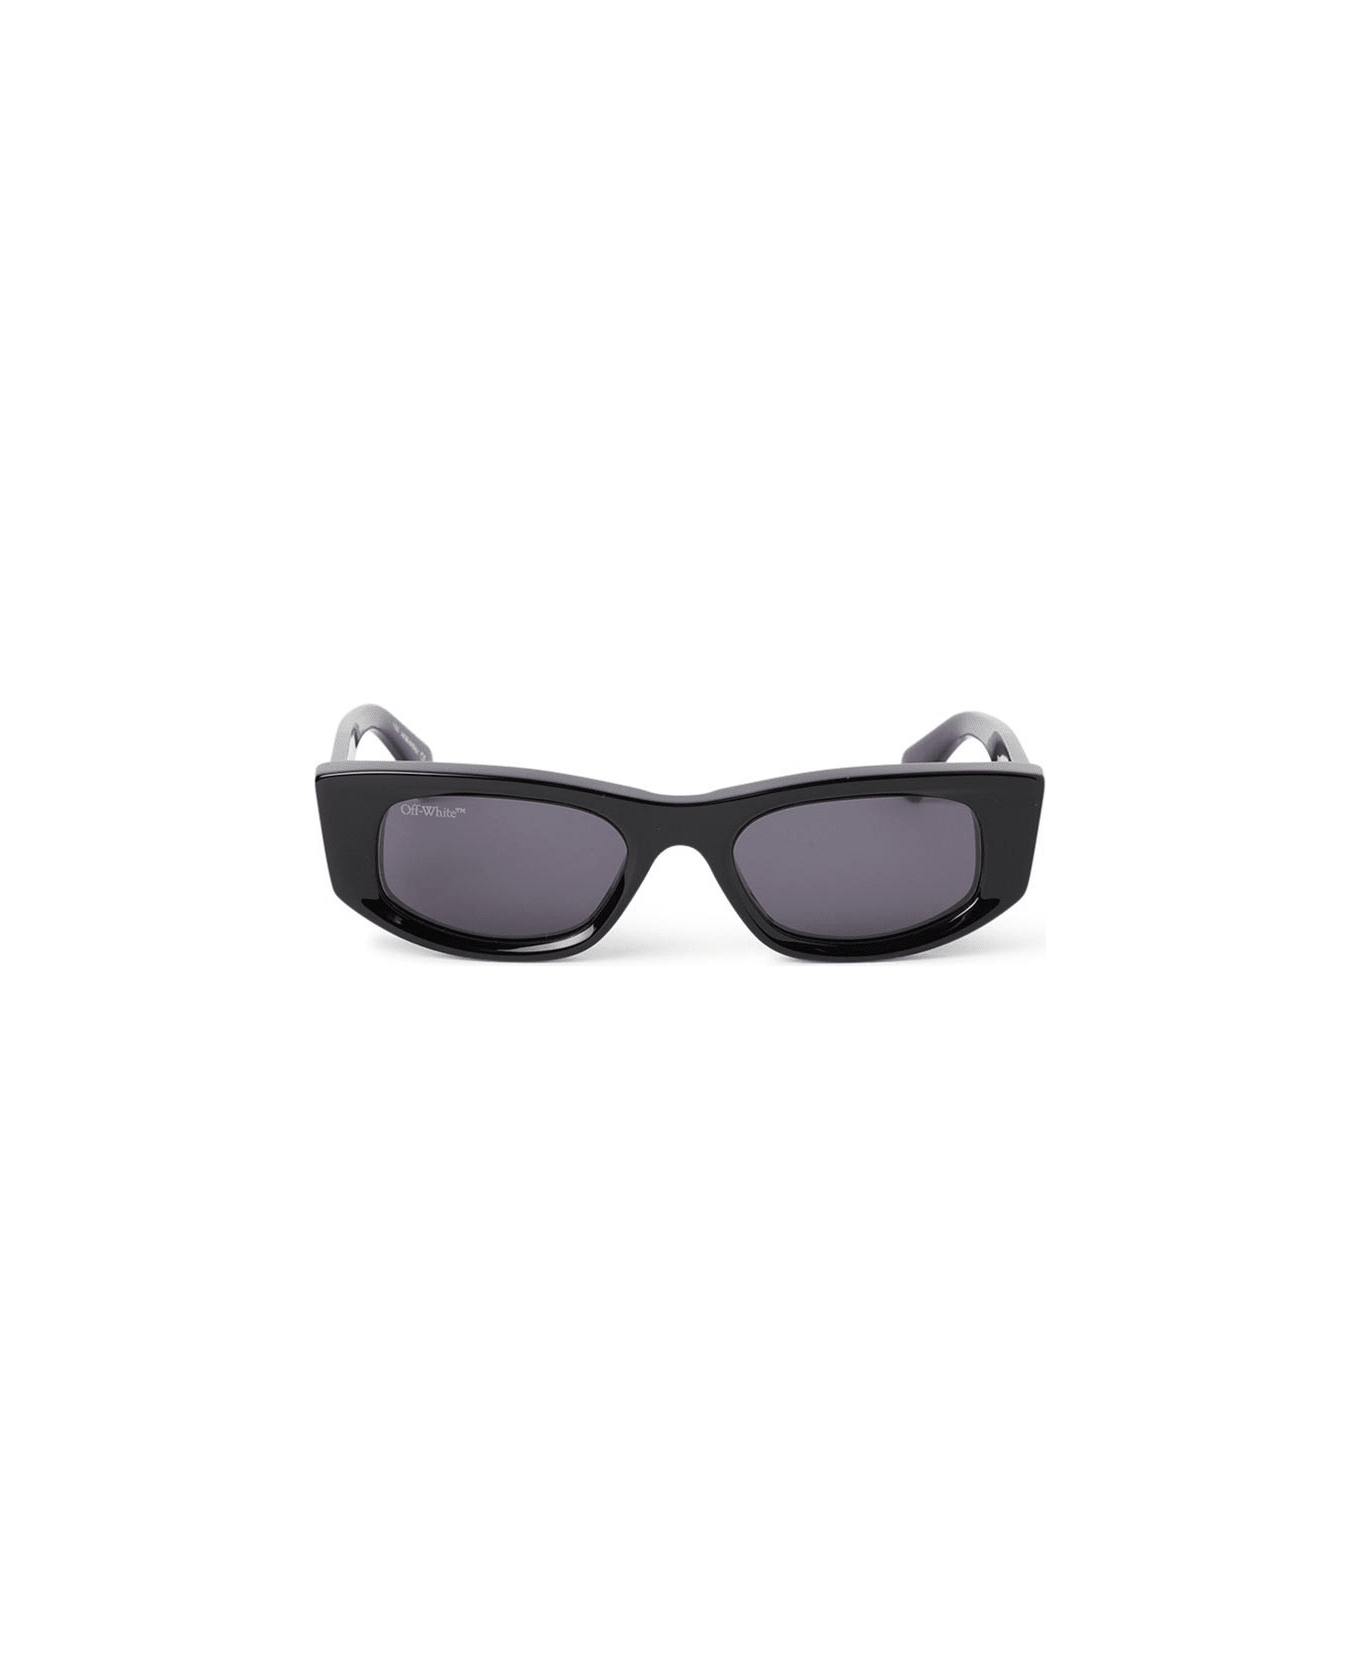 Off-White Matera Sunglasses - Nero/Grigio